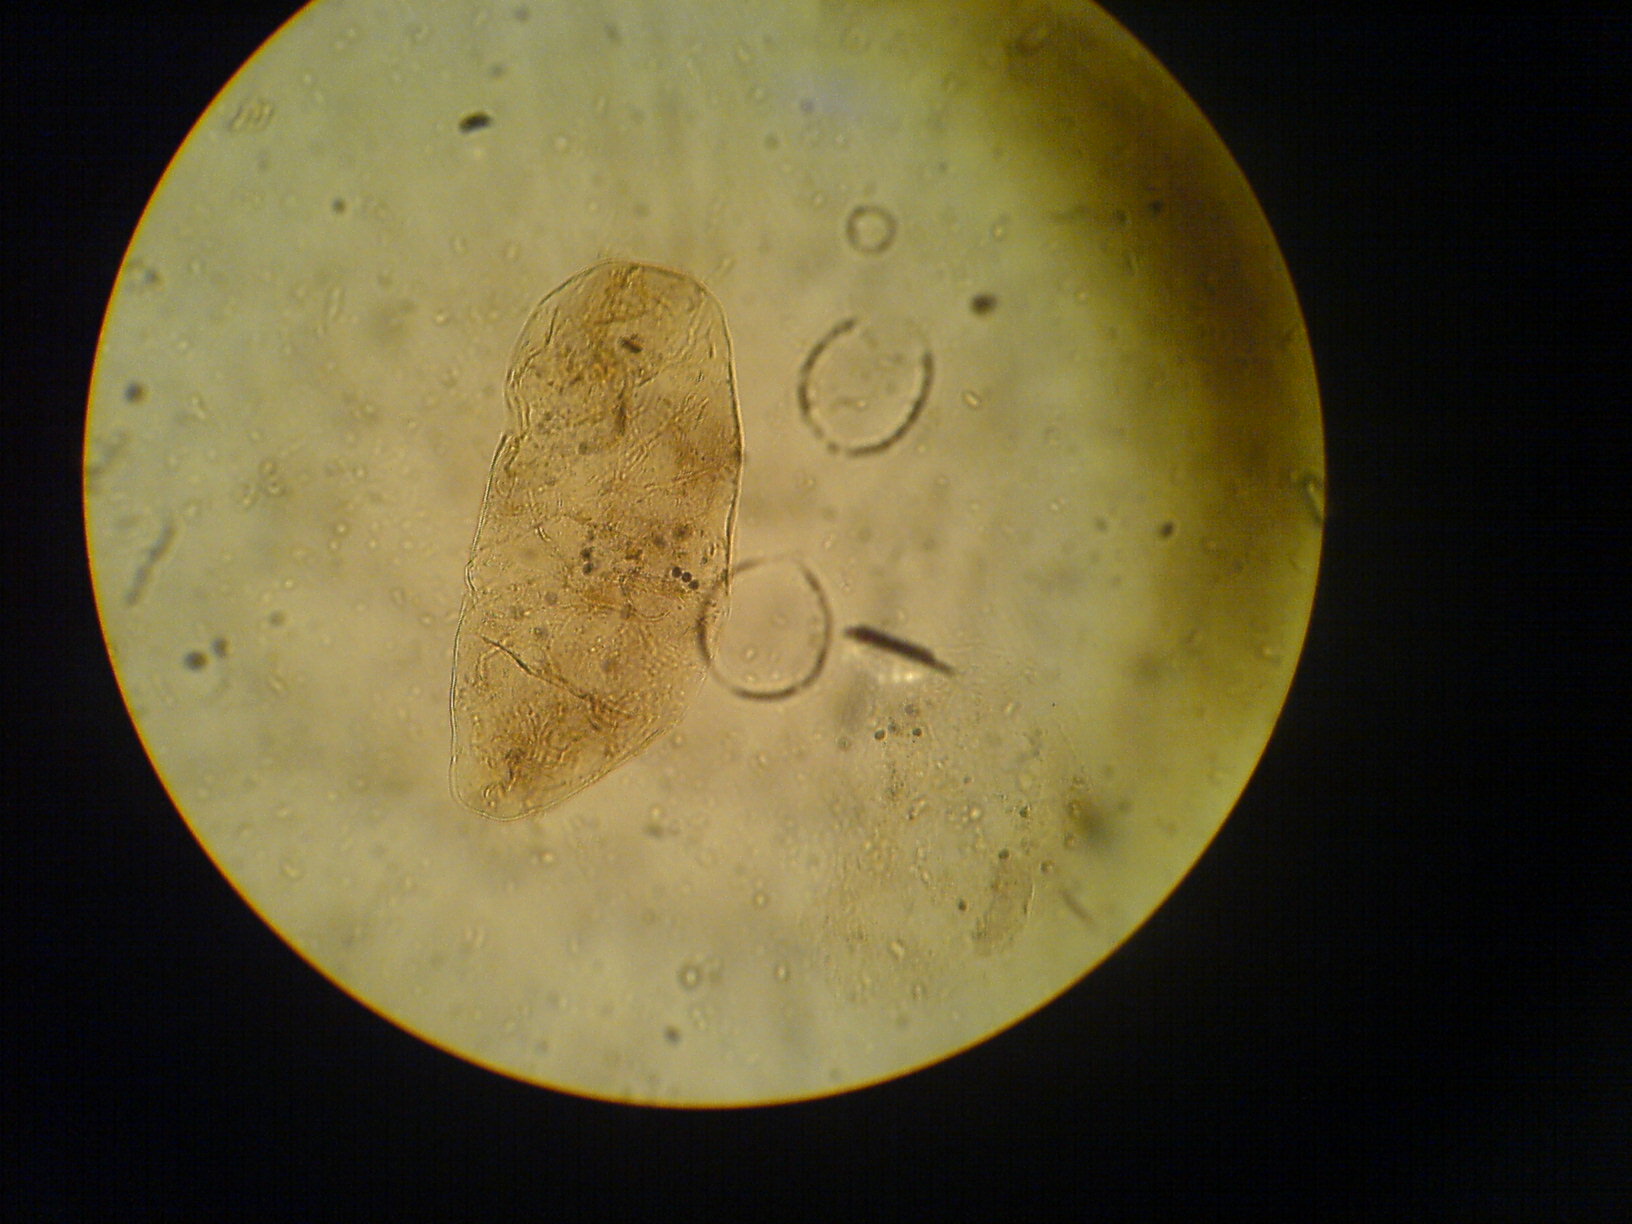 Споры в кале у взрослого. Цисты лямблии микроскопия. Цисты лямблий микроскопия кала. Яйца описторхов под микроскопом. Яйца гельминтов микроскопия.